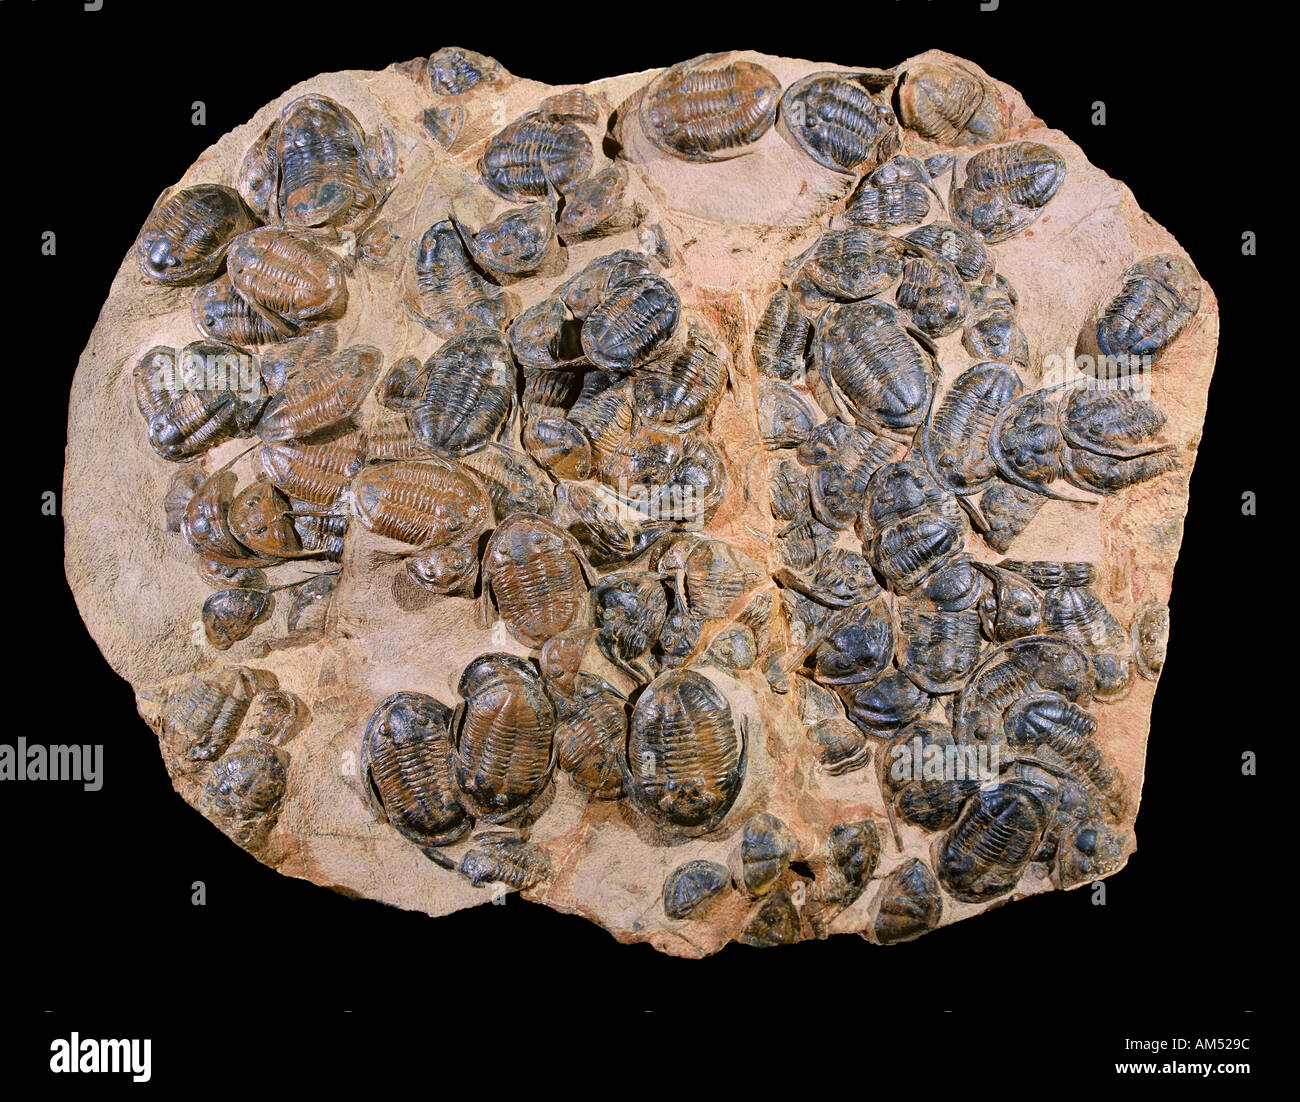 Una grande lastra di roccia con molti trilobiti in esso. Trilobiti 'a tre lobi' sono estinti gli artropodi che formano la classe Trilobita. Foto Stock